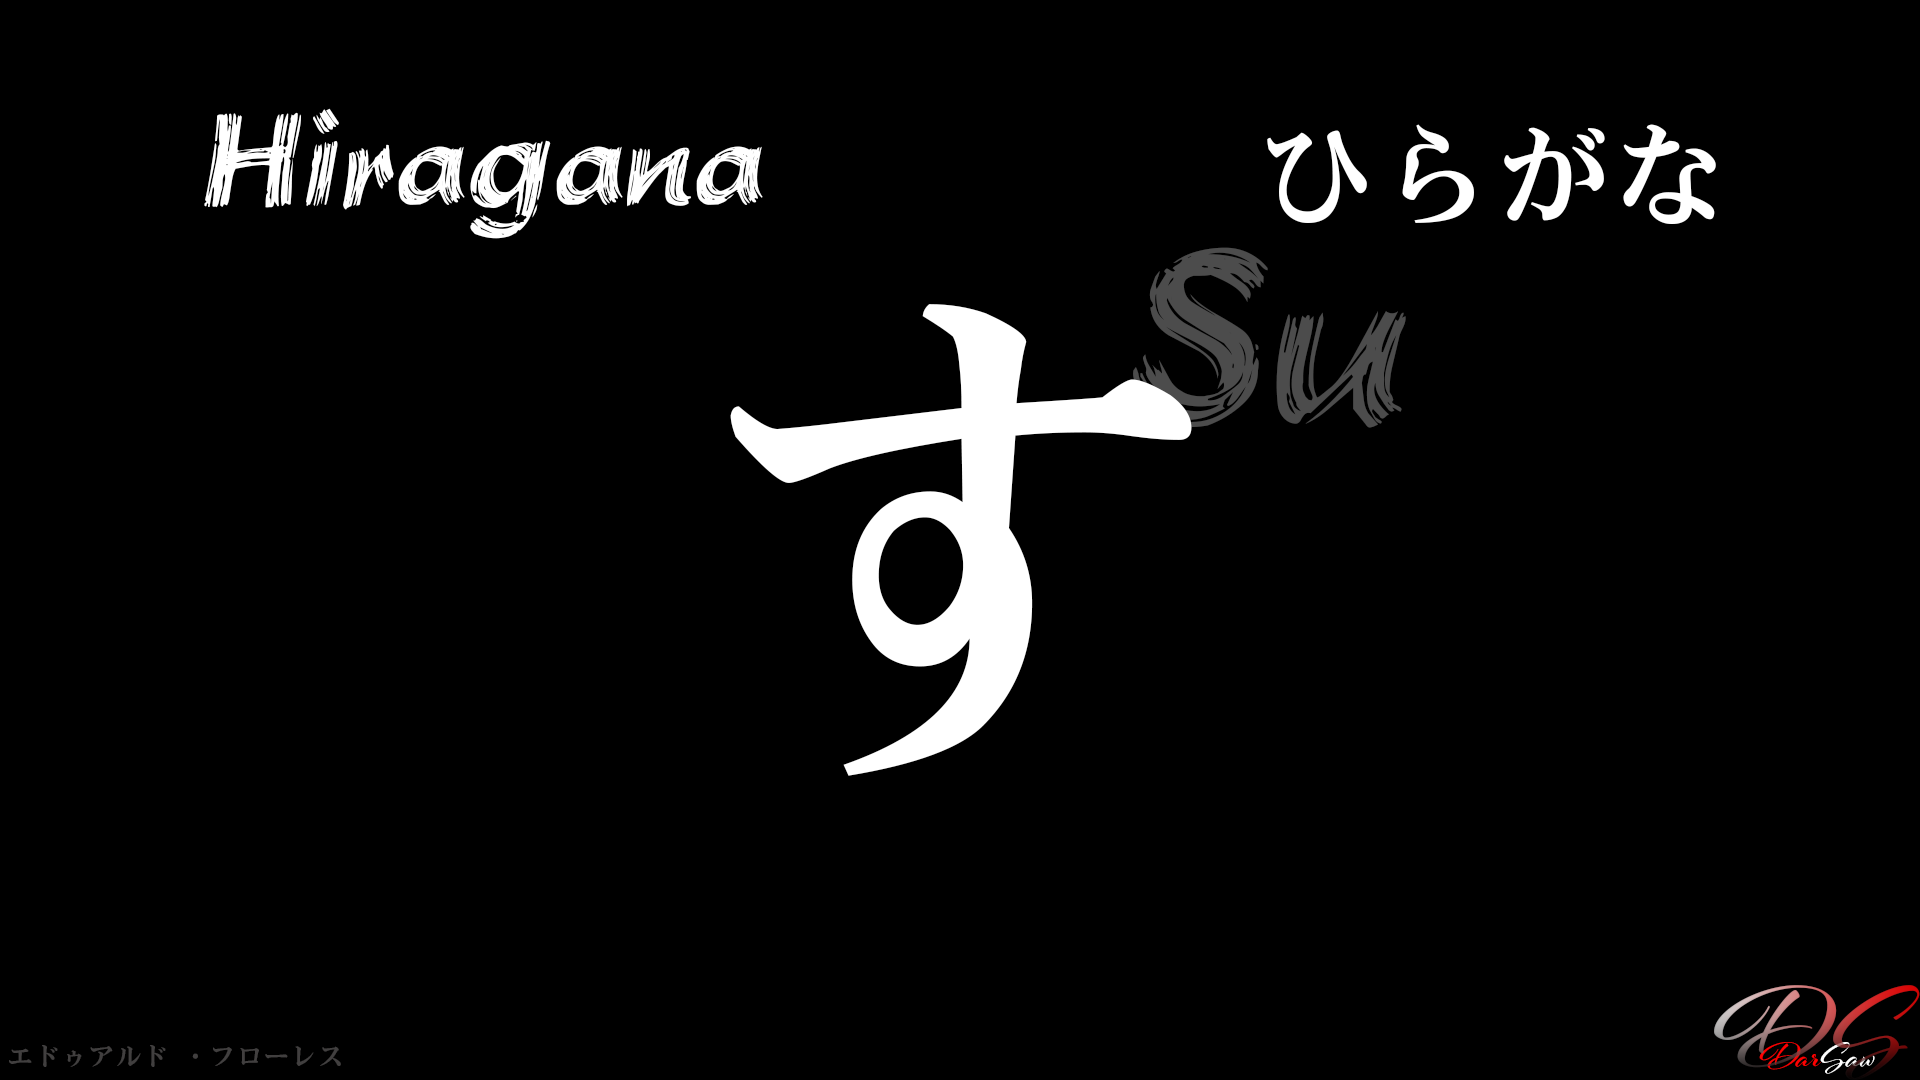 General 1920x1080 hiragana text